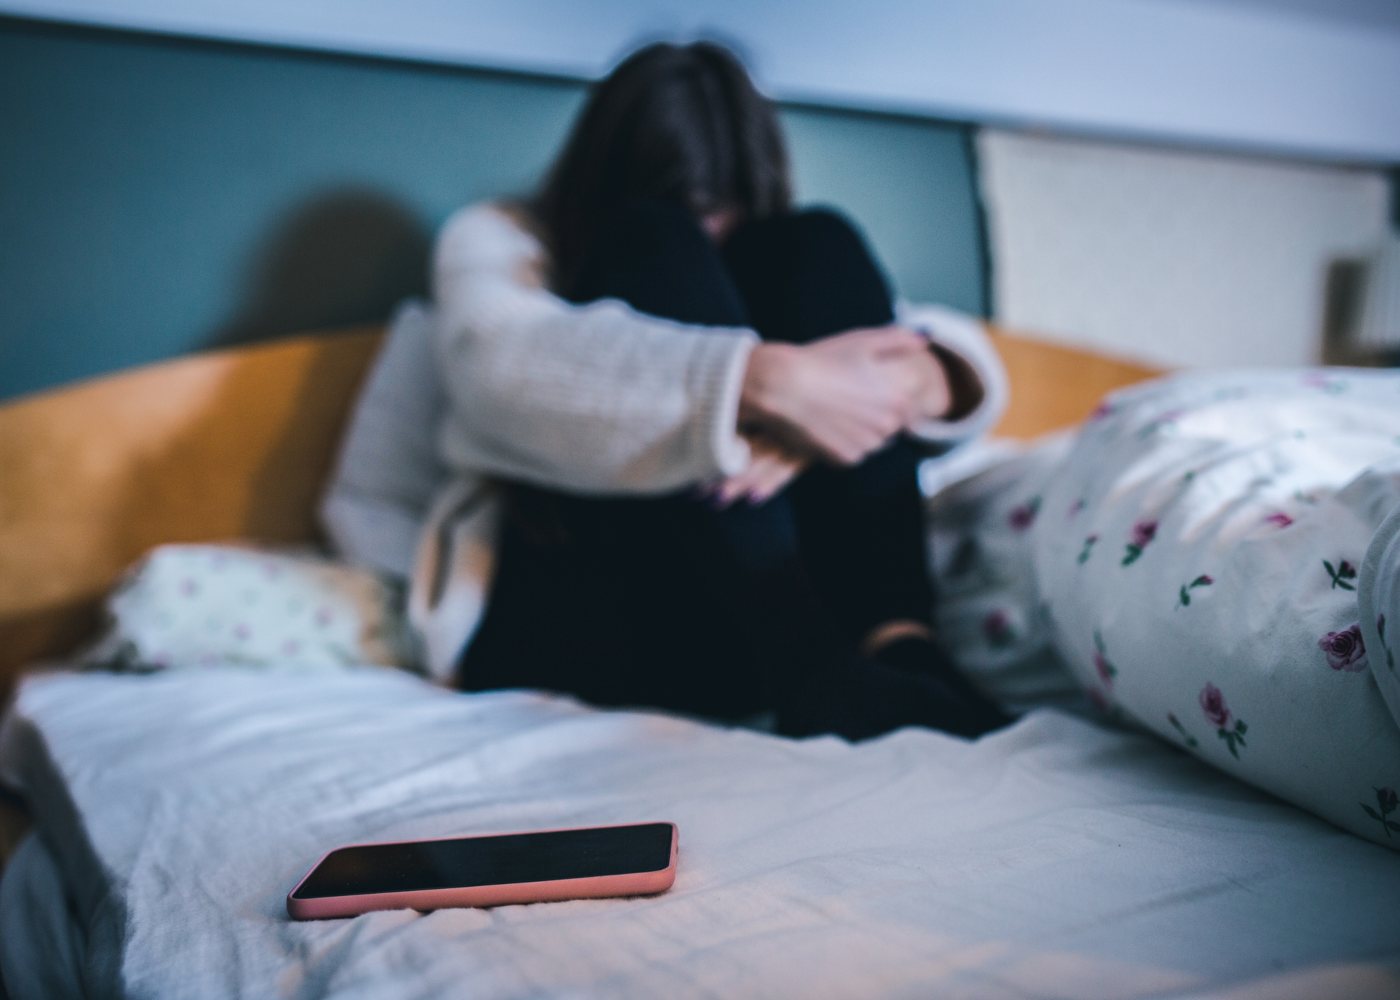 jovem na cama com telemóvel a sofrer de cyberbullying